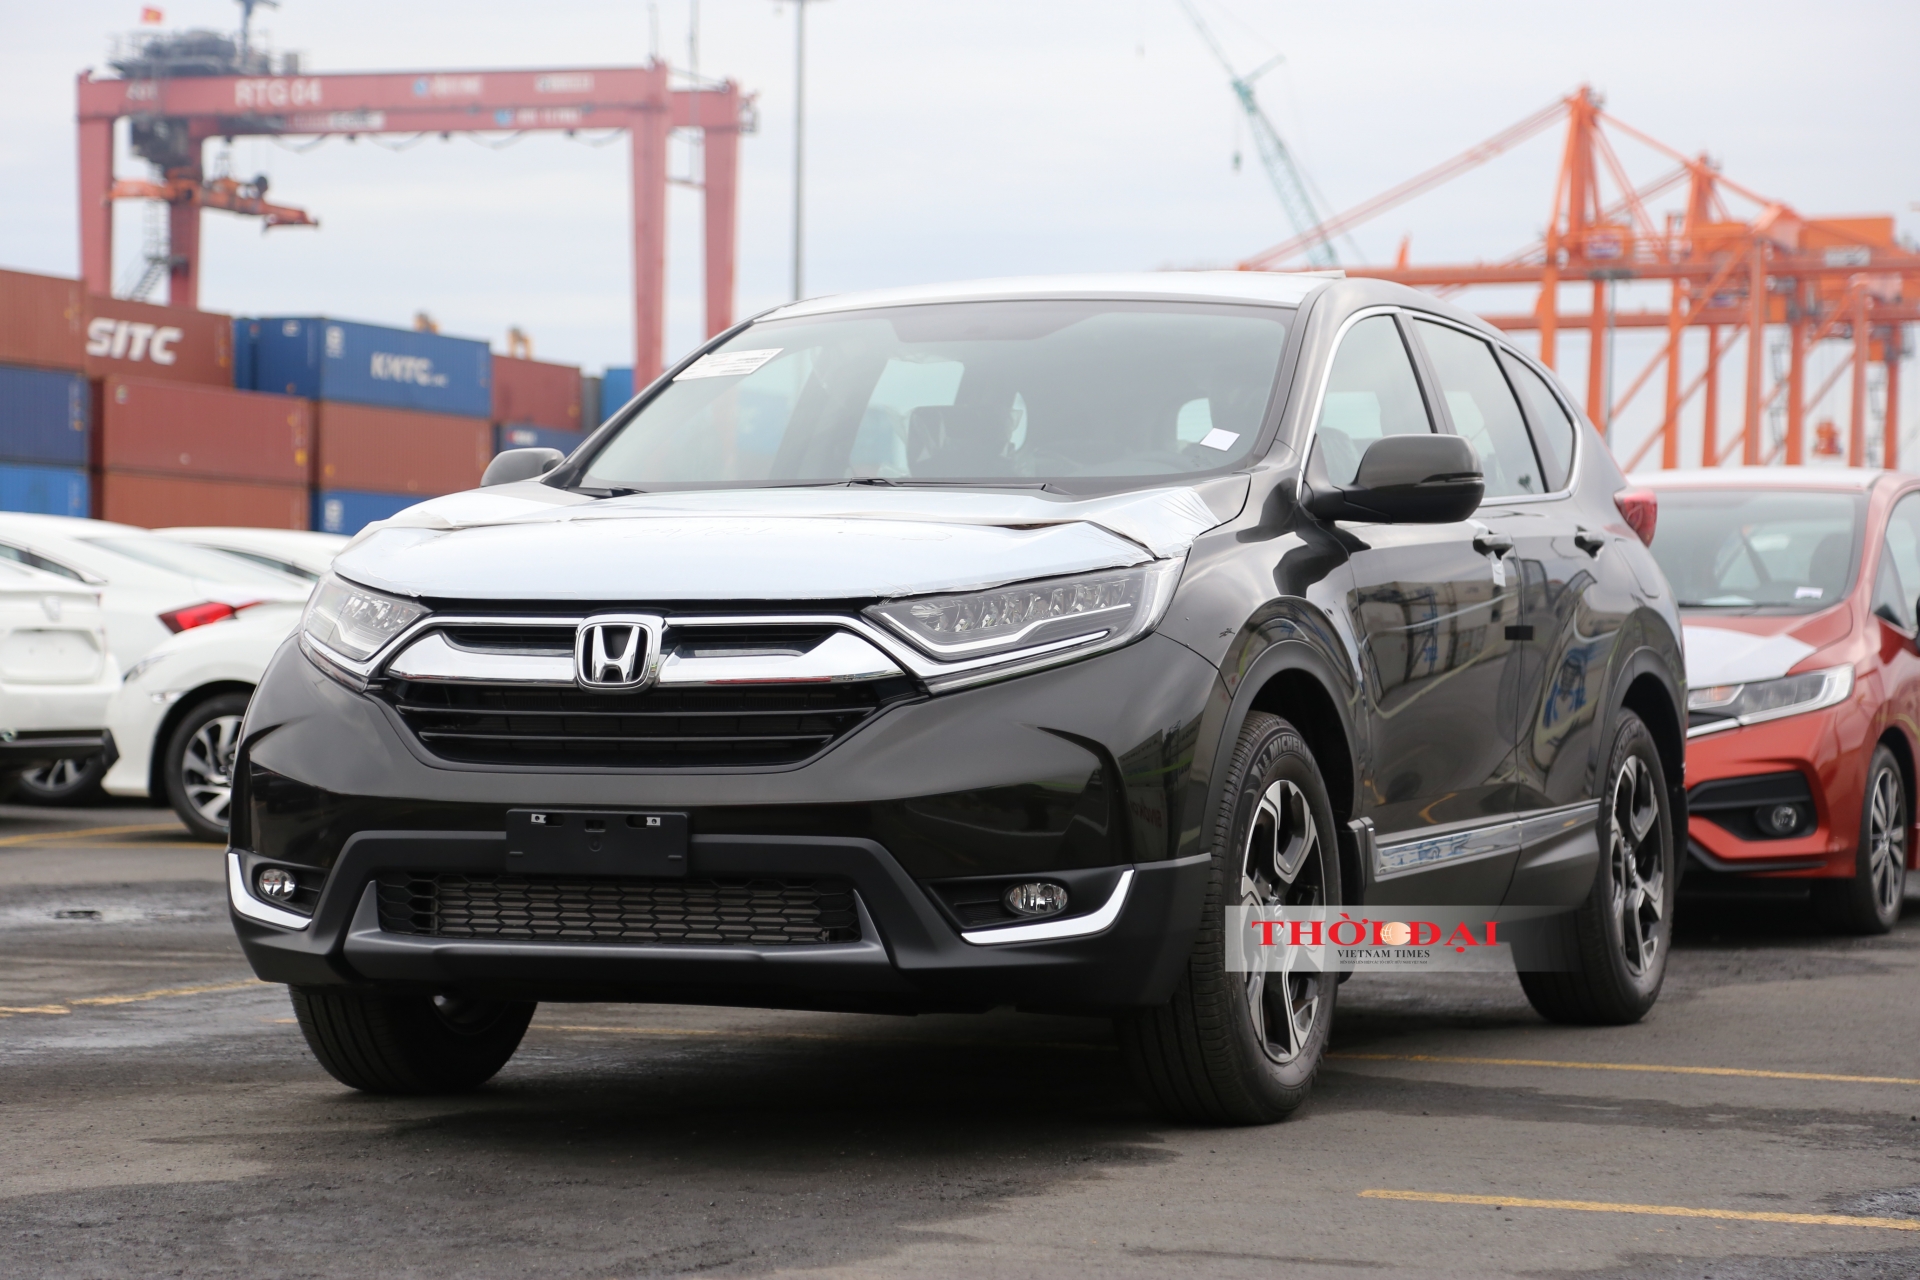 Giá xe ô tô Honda mới nhất tháng 3/2020: Accord có giá cao nhất, hơn 1,3 tỷ đồng